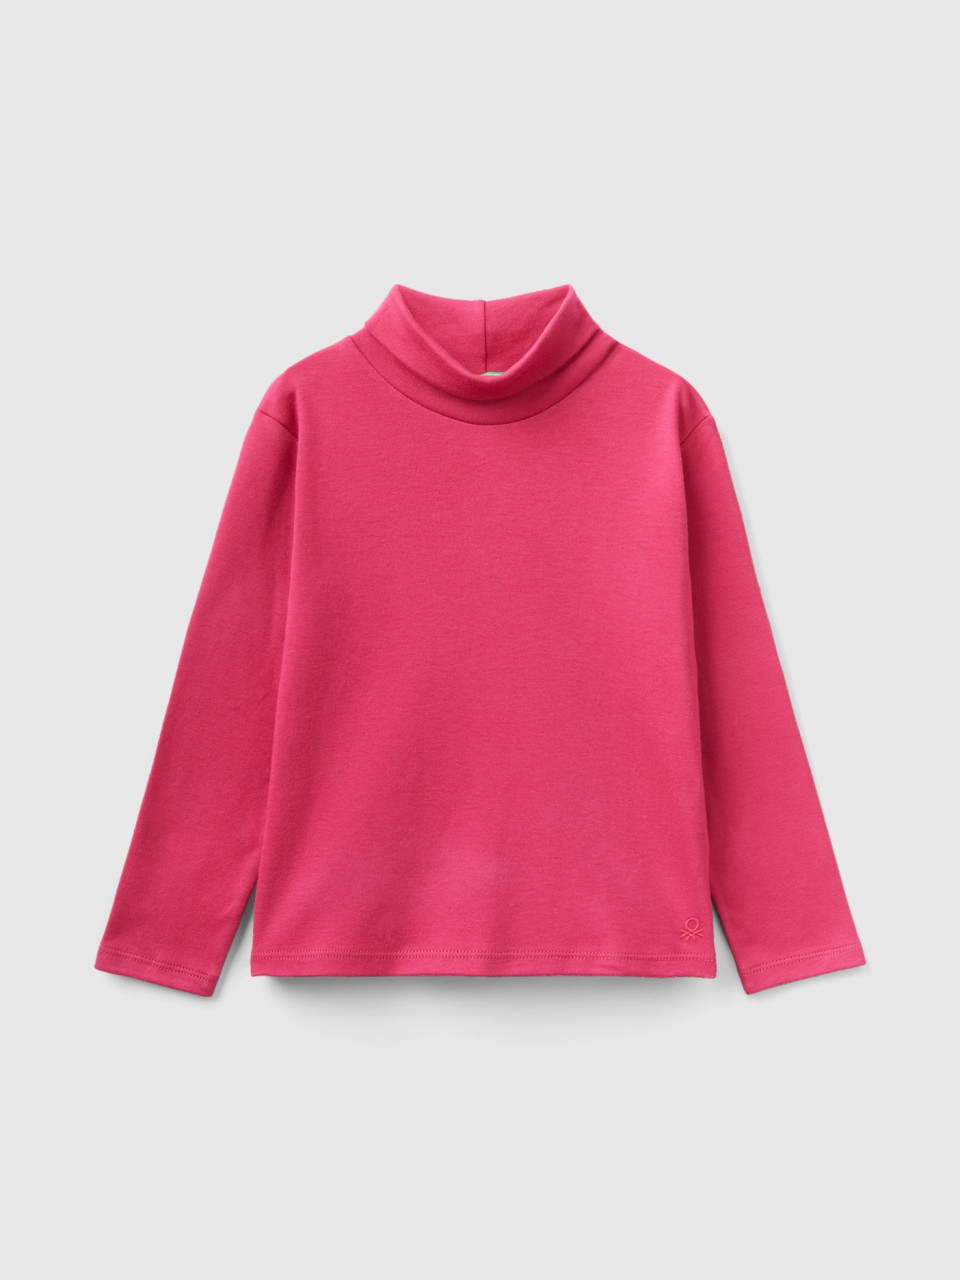 Benetton, Turtleneck T-shirt In Warm Organic Cotton, Cyclamen, Kids